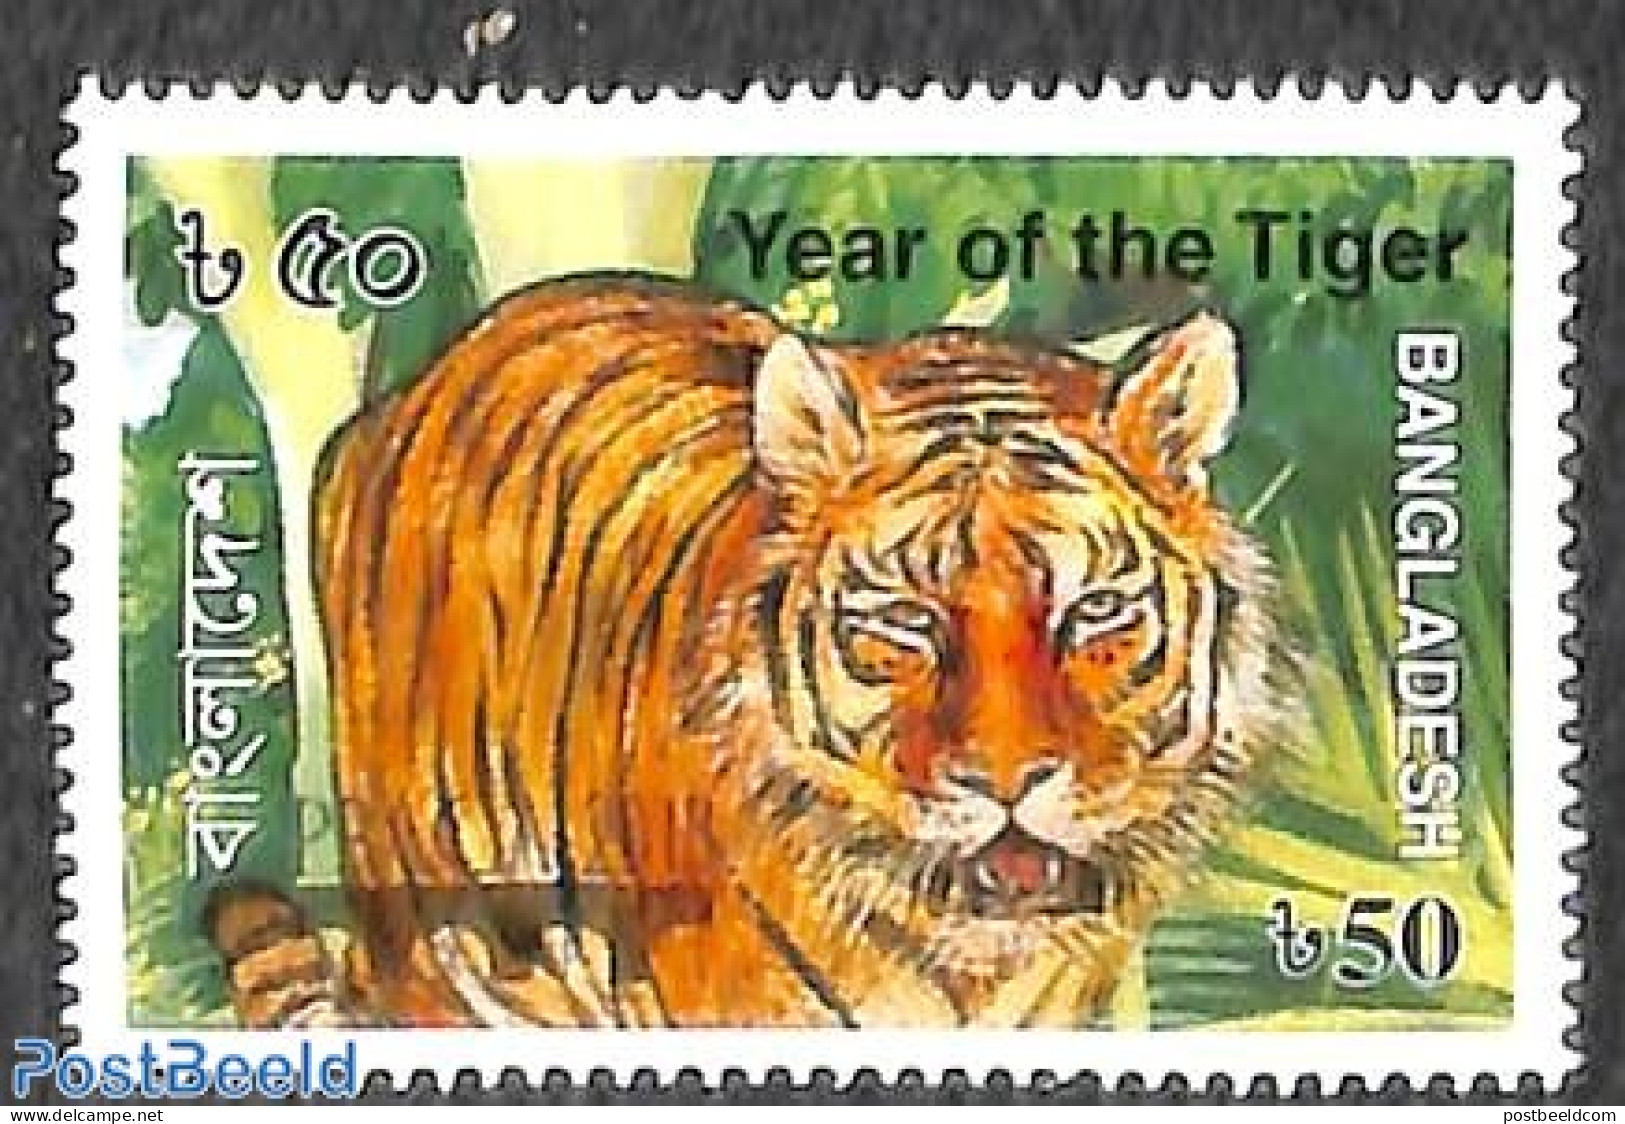 Bangladesh 2018 Year Of The Tiger, Praga 201"8 Overprint 1v, Mint NH, Nature - Cat Family - Philately - Bangladesh